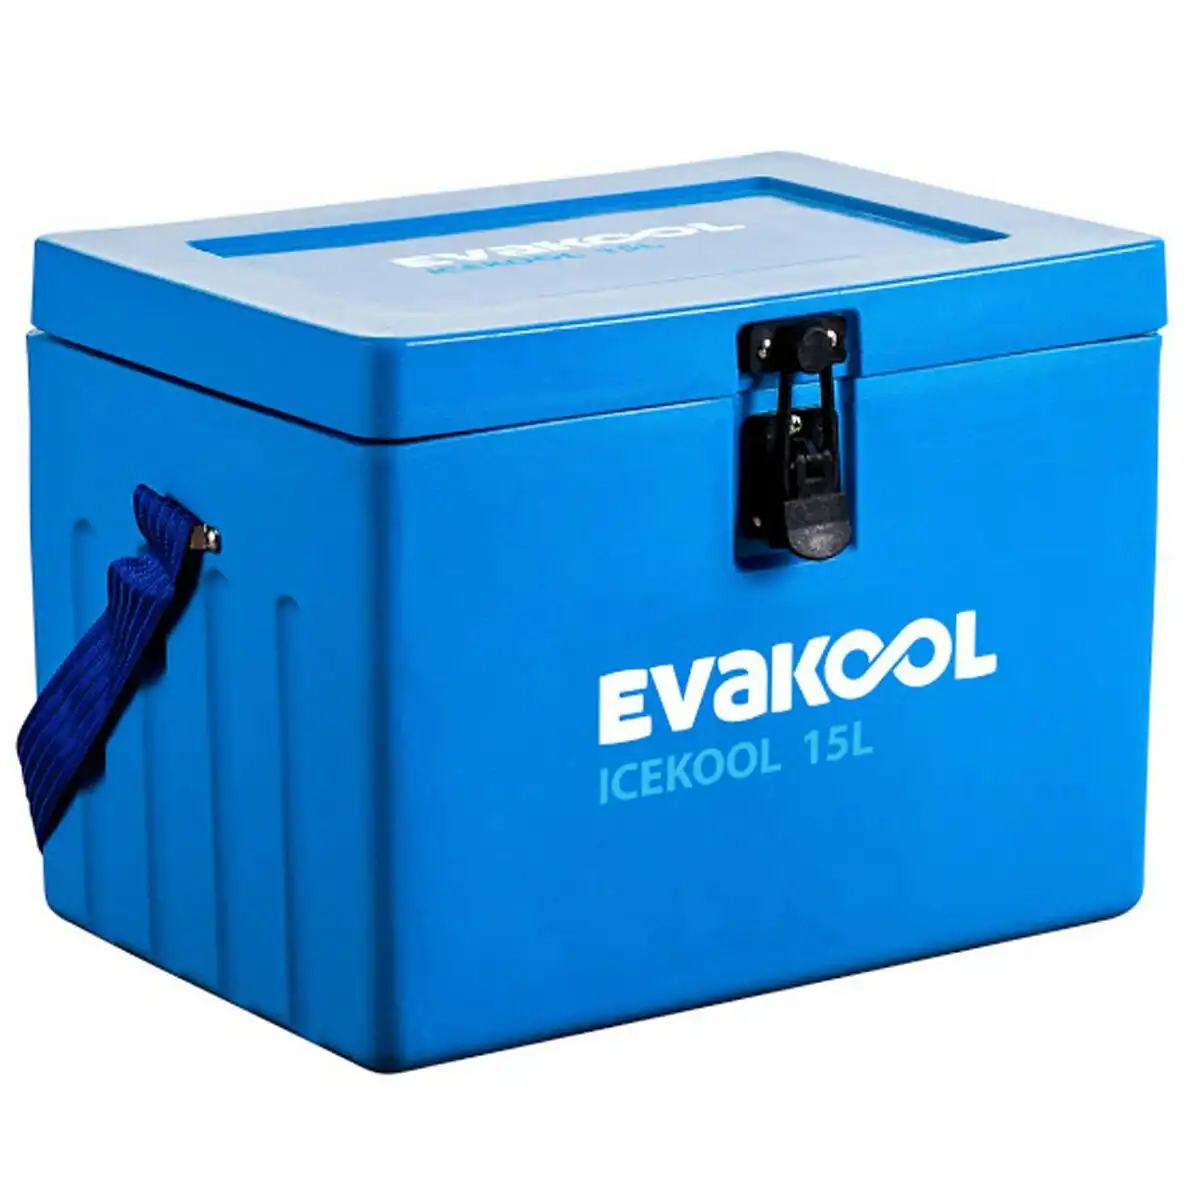 Evakool 15L Icekool Polyethylene Icebox